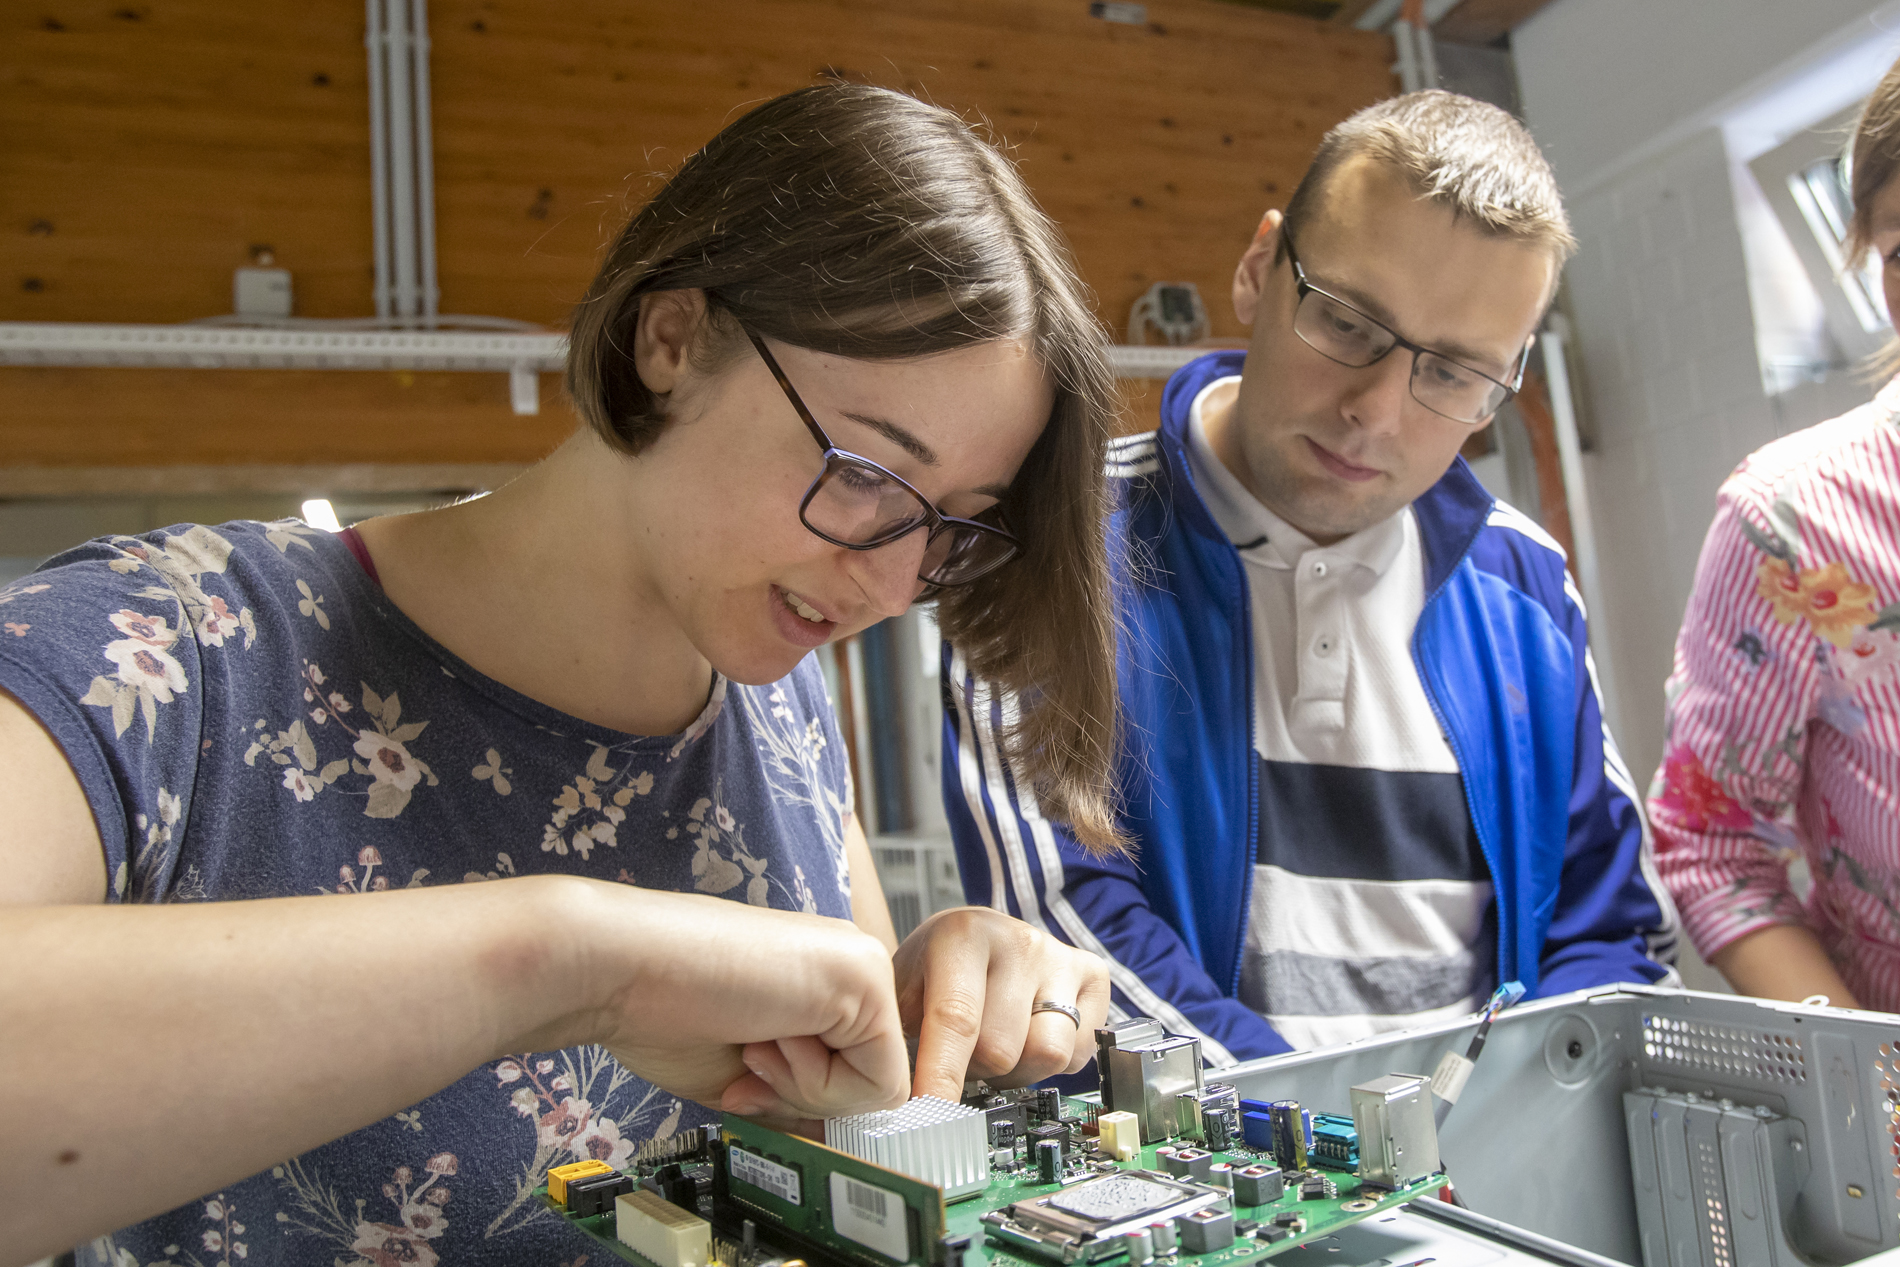 Das Bild zeigt eine junge dunkelhaarige Frau in geblümten blauen T-Shirt bei der Arbeit an einem elektronischen Schaltkreis. Ein junger Mann mit Brille rechts neben ihr schaut dabei zu.